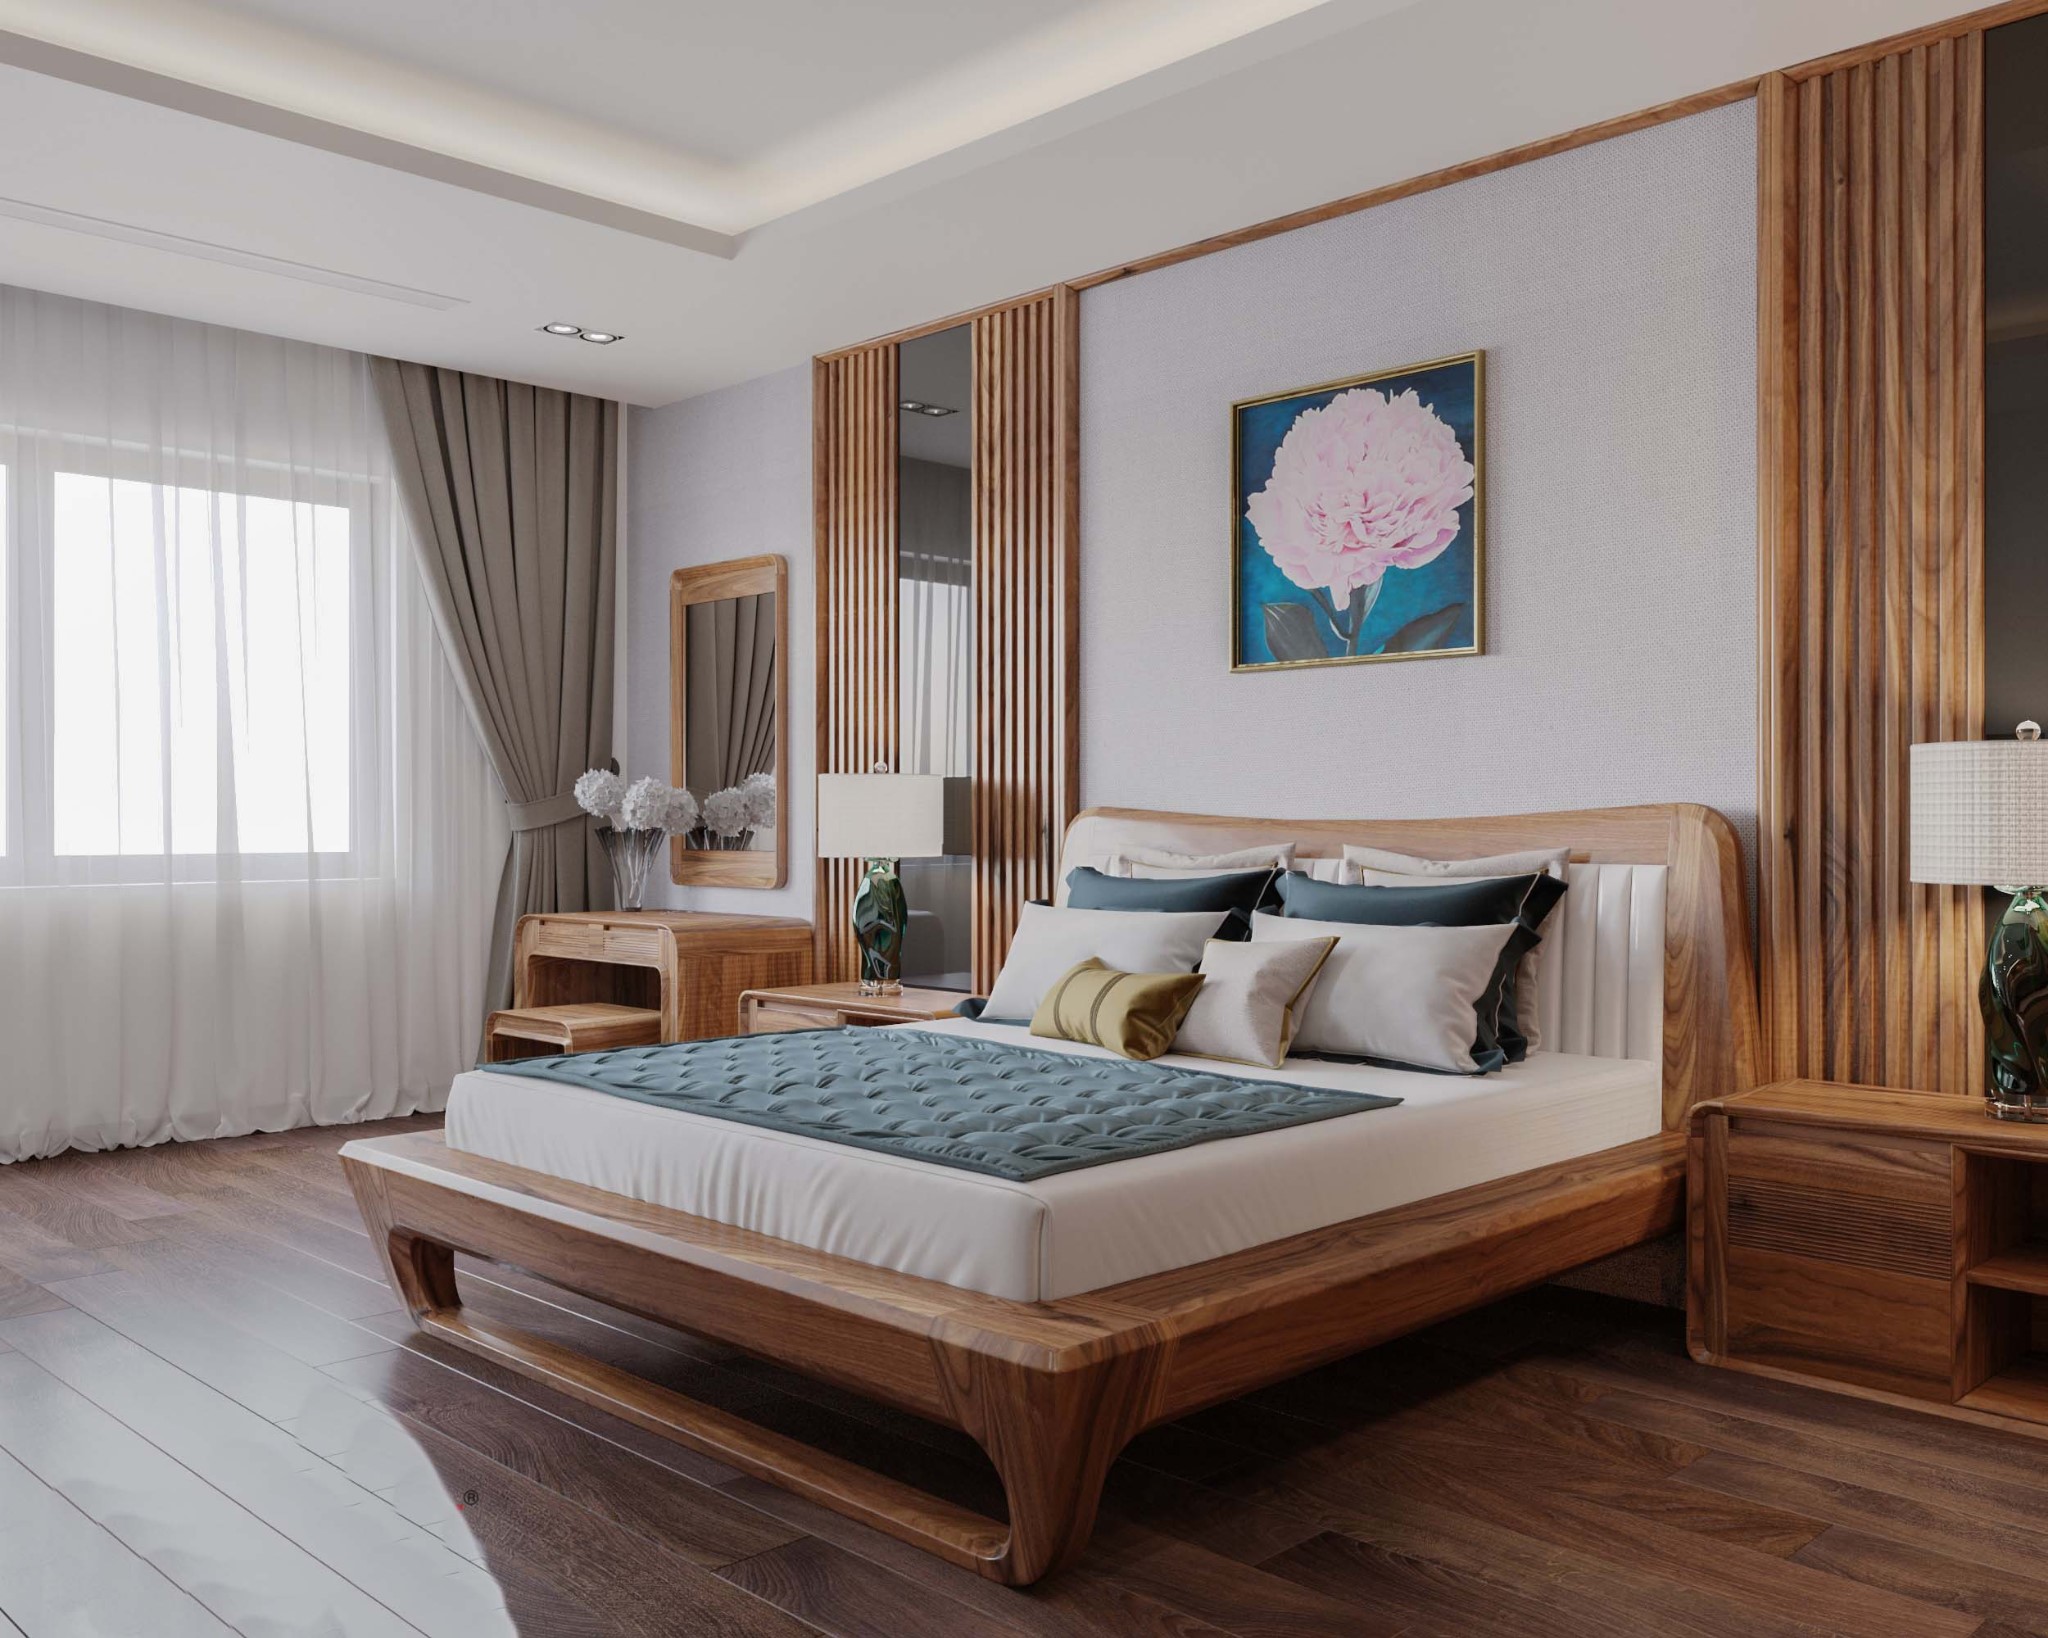 Giường ngủ gỗ tự nhiên chắc chắn và sang trọng